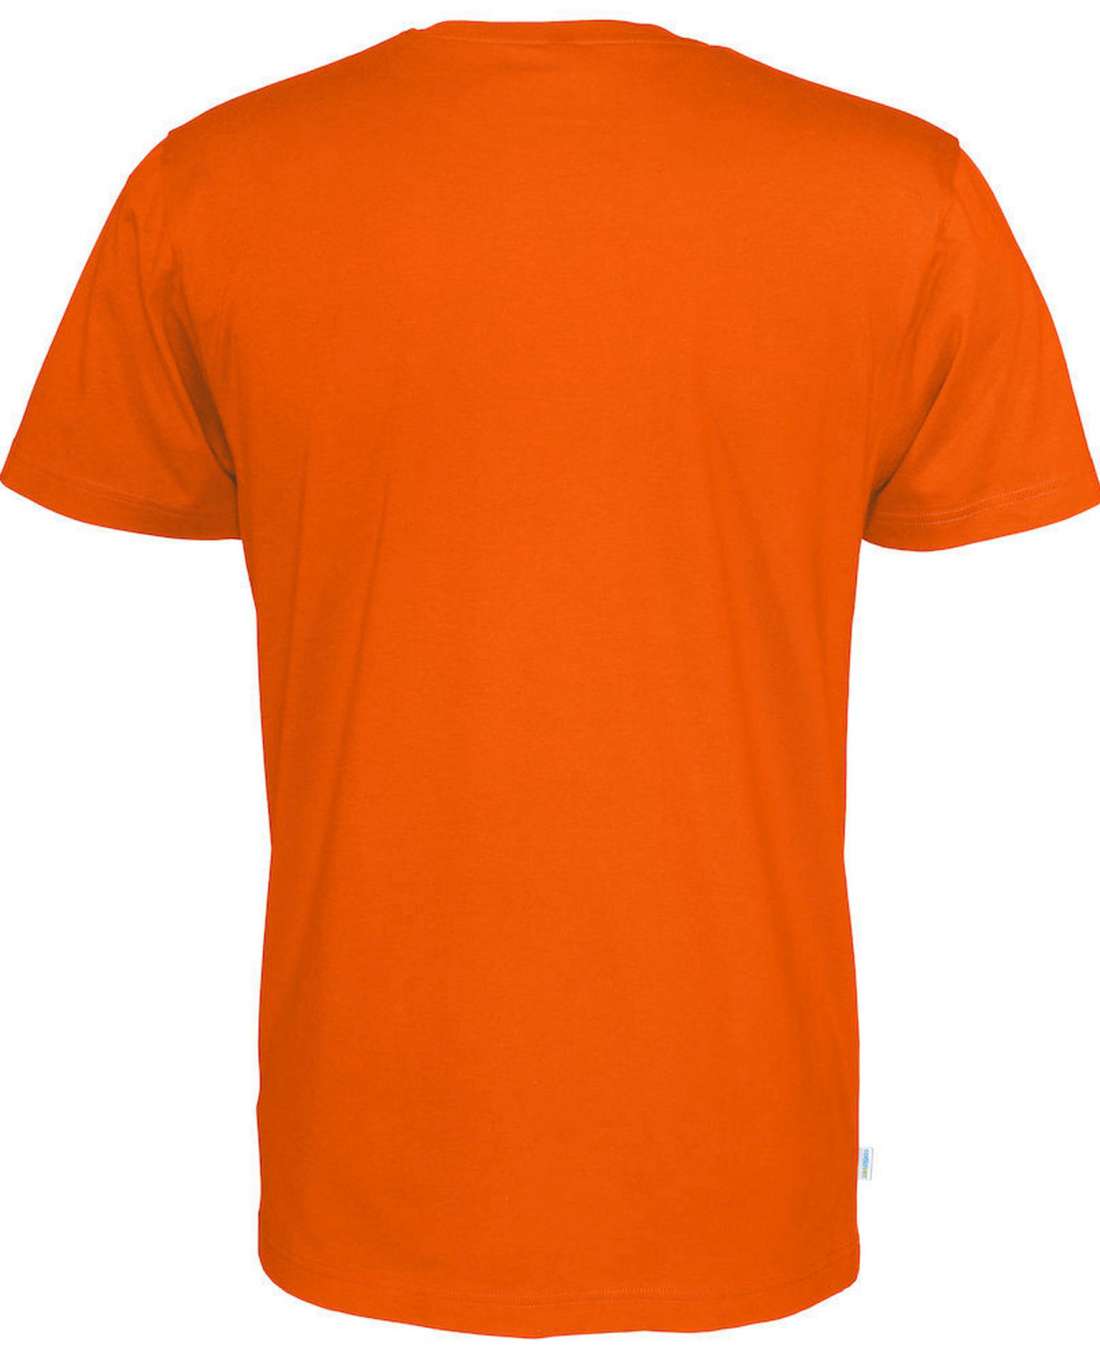 Cottover Miesten t-paita, Oranssi